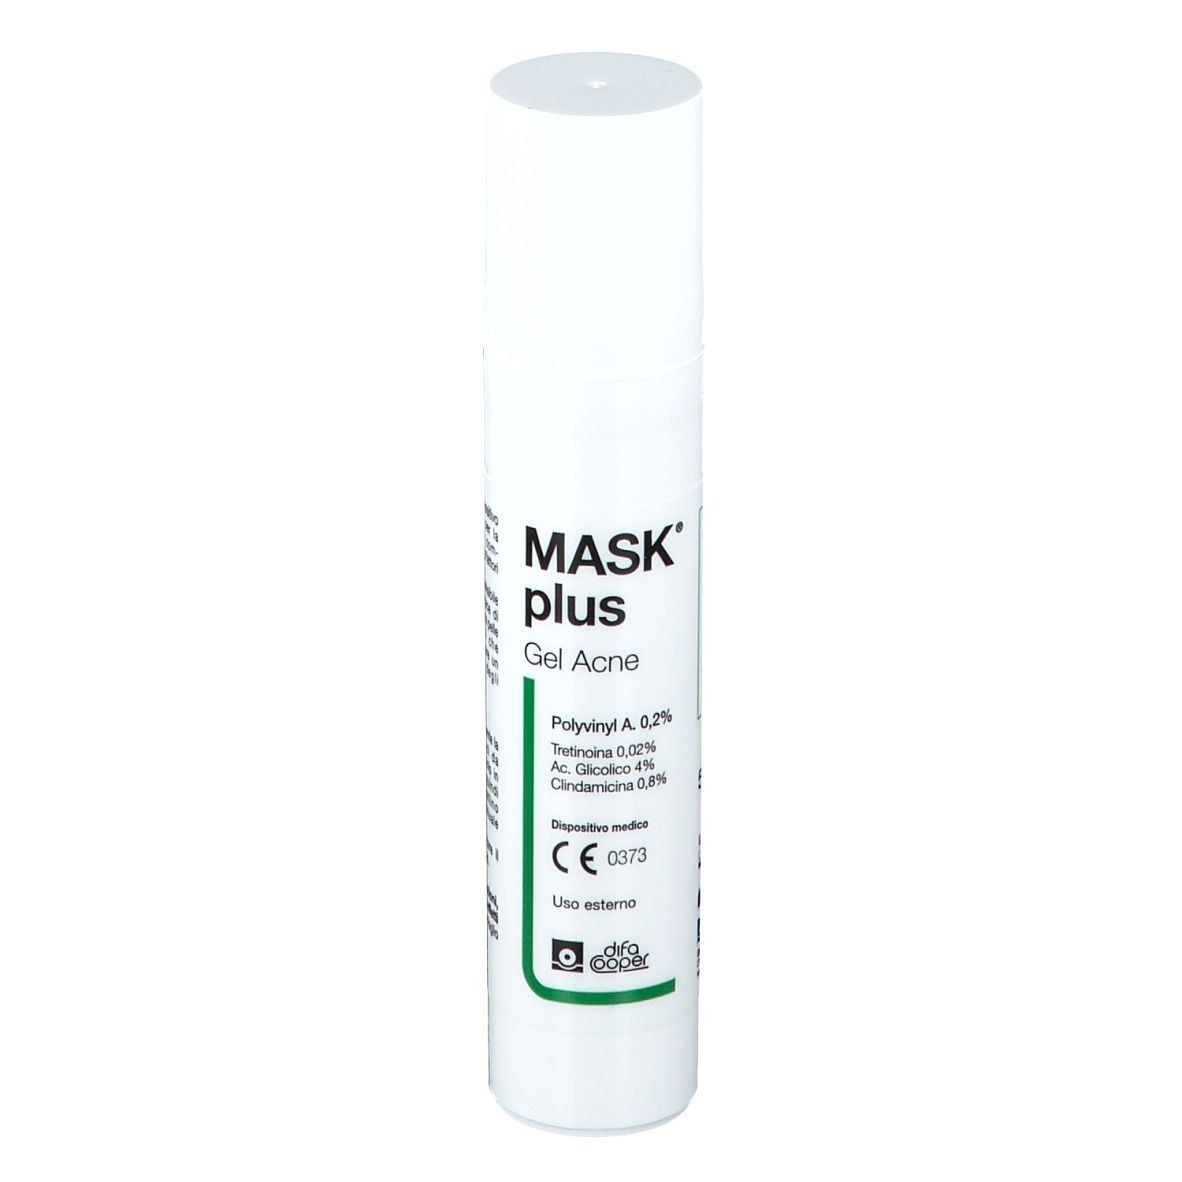 MASK® Plus Gel Acne